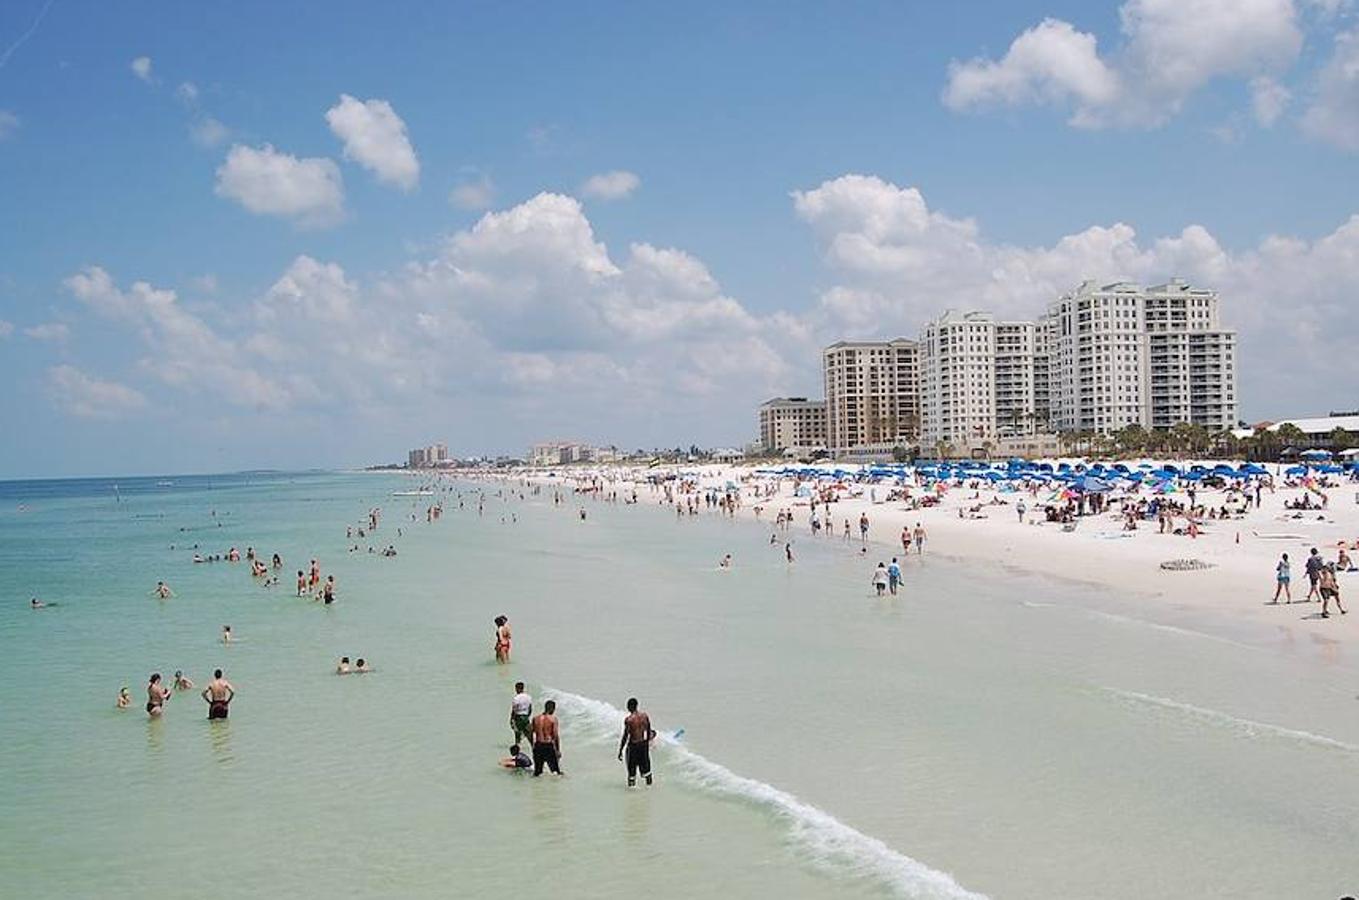 Calificada por la mayor parte de sus visitantes como excelente, la Playa Clearwater se encuentra en la costa del Golfo del estado de Florida (Estados Unidos). Debido a sus aguas cristalinas y a su fina arena blanca, ha conseguido quedarse en la séptima posición.